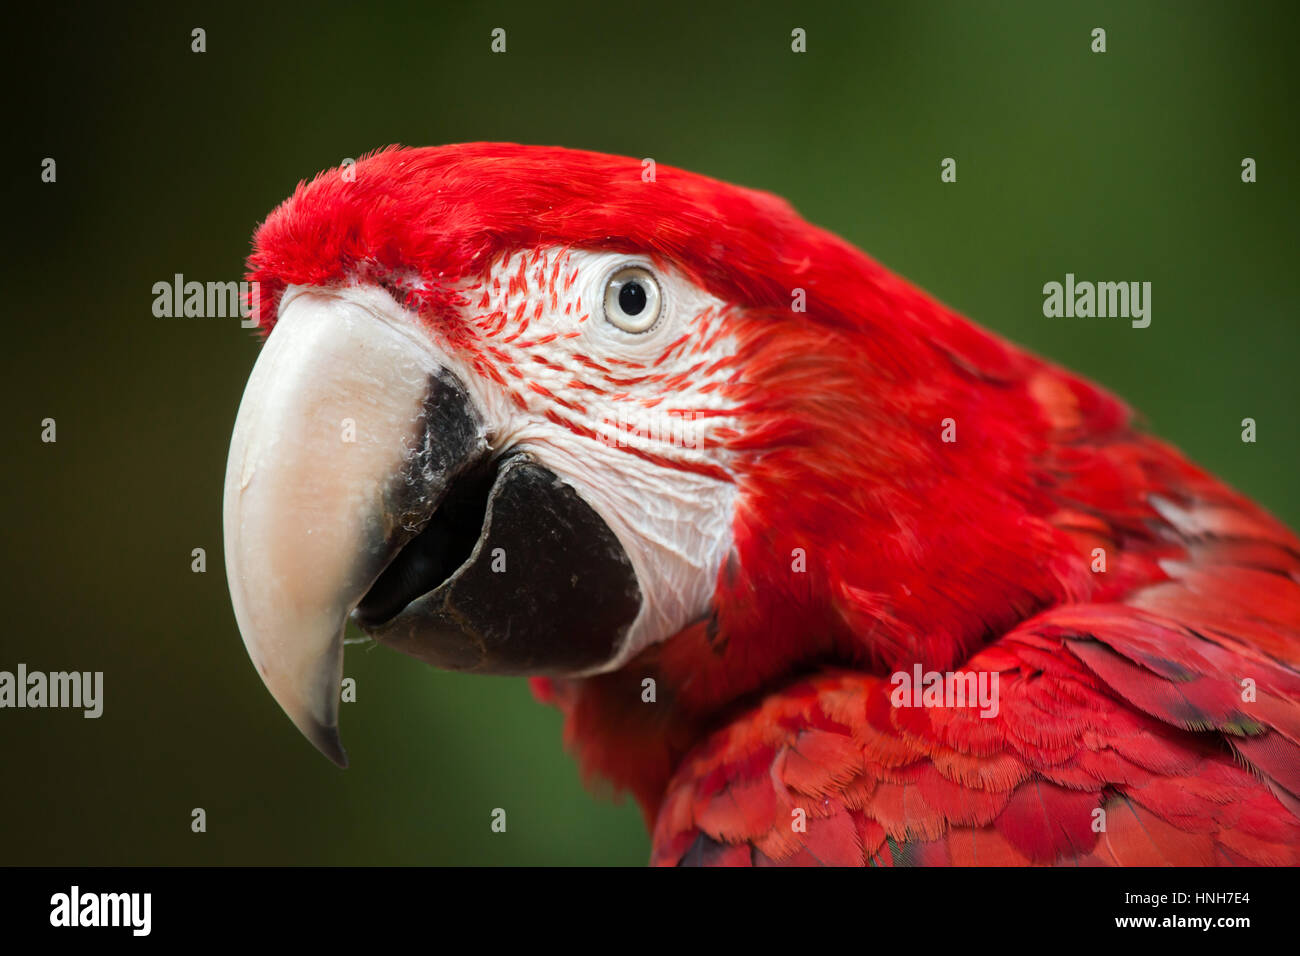 Green-winged macaw (Ara chloropterus), également connu sous le nom de red-et-ara vert. Banque D'Images